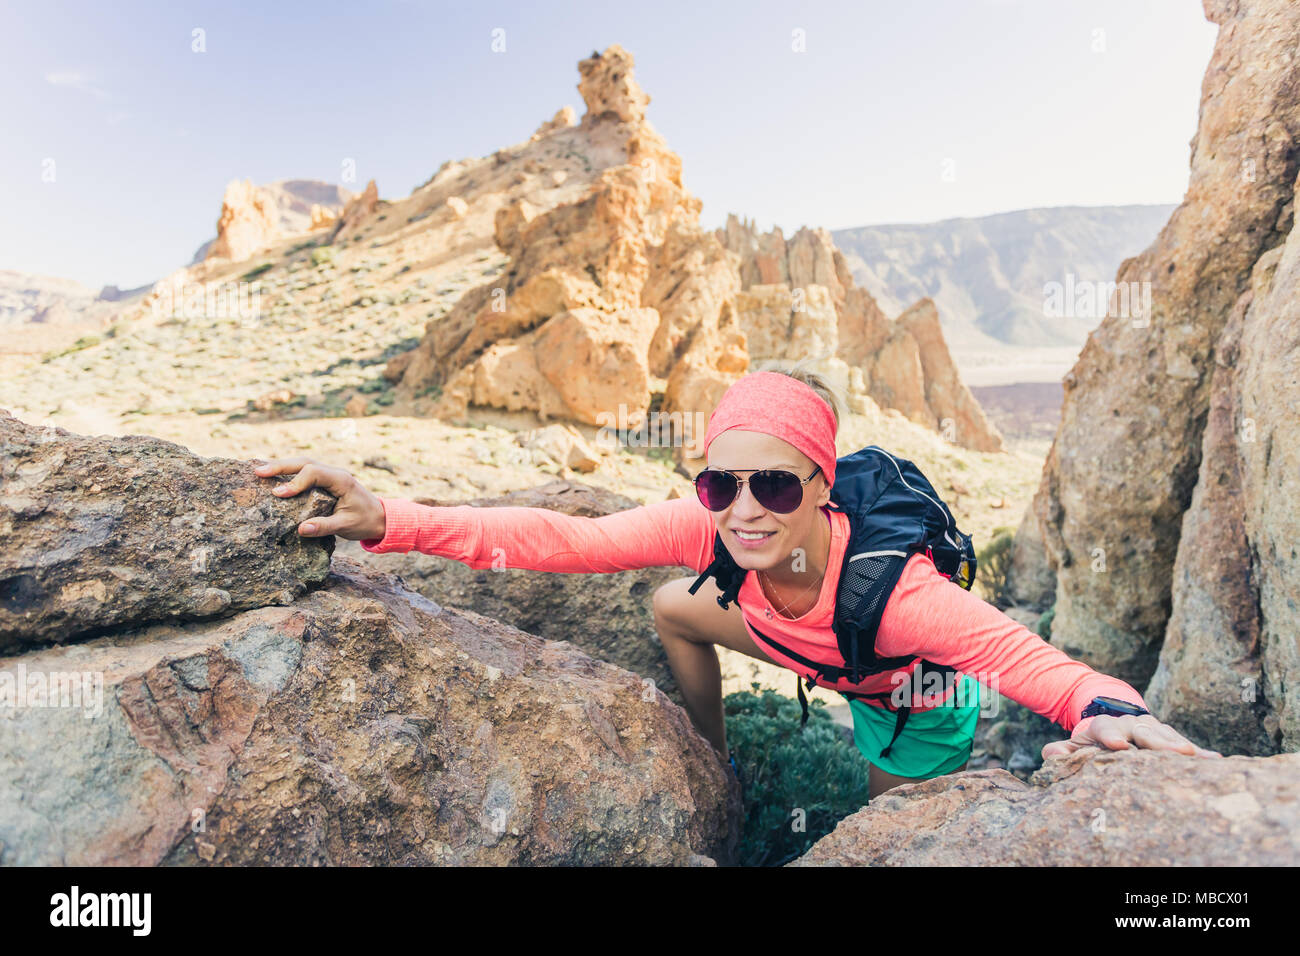 Randonneur femme atteint sommet de la montagne. Grimpeur ou coureur à pied et à la recherche d'inspiration au paysage sur sentier rocheux sur Tenerife, Canaries Espagne. F Banque D'Images